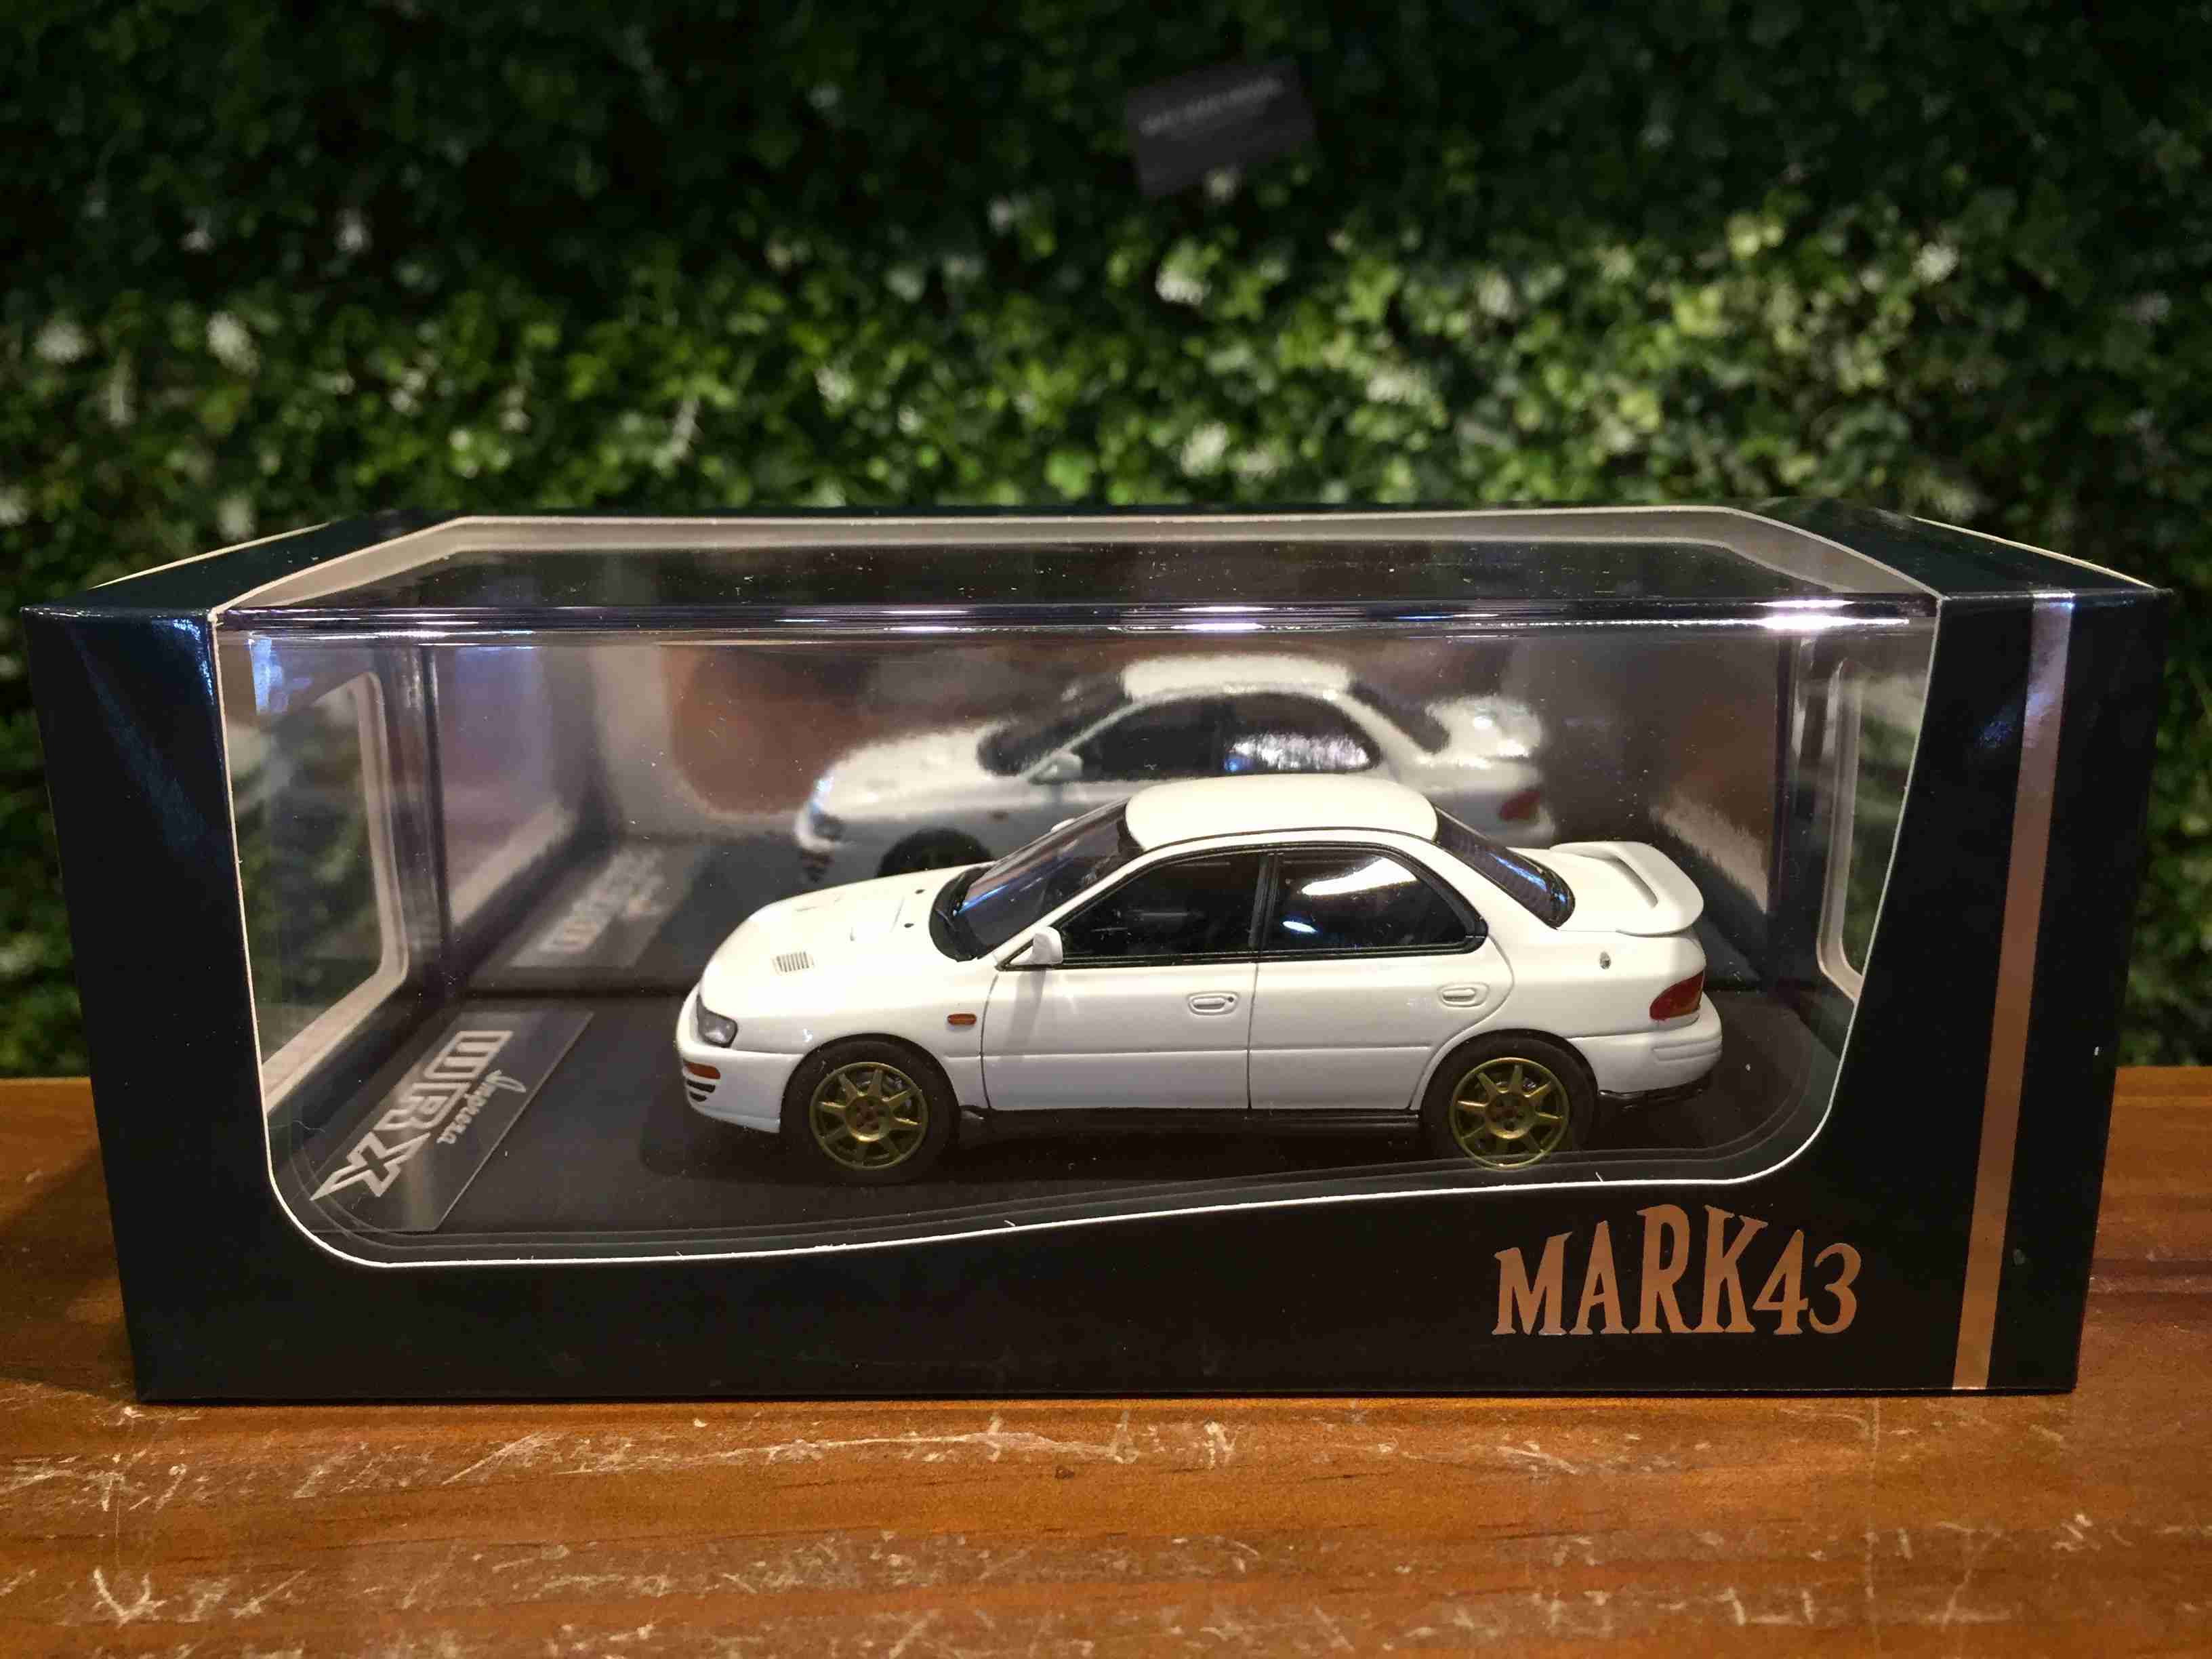 1/43 Mark43 Subaru Impreza WRX (GC8) White PM43128CW【MGM】